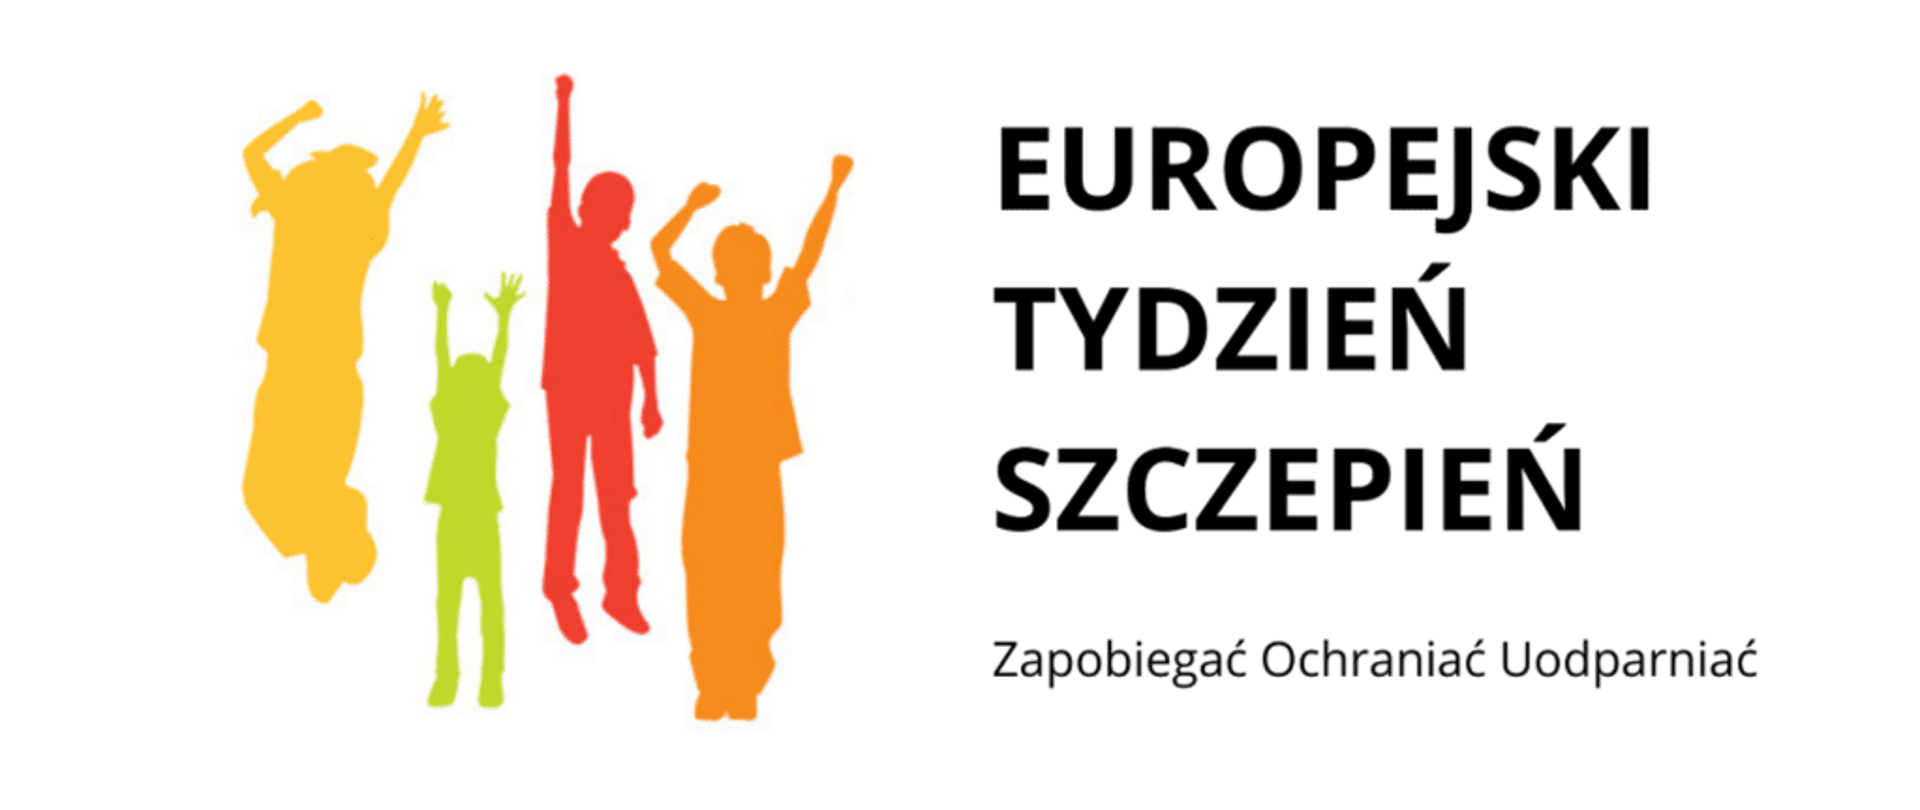 Grafika na białym tle napis Europejski Tydzień Szczepień Zapobiegać Ochraniać Uodparniać; 4 sylwetki bez detali skaczących dzieci z rękami w górze, w kolorach żółty, zielony czerwony pomarańczowy.